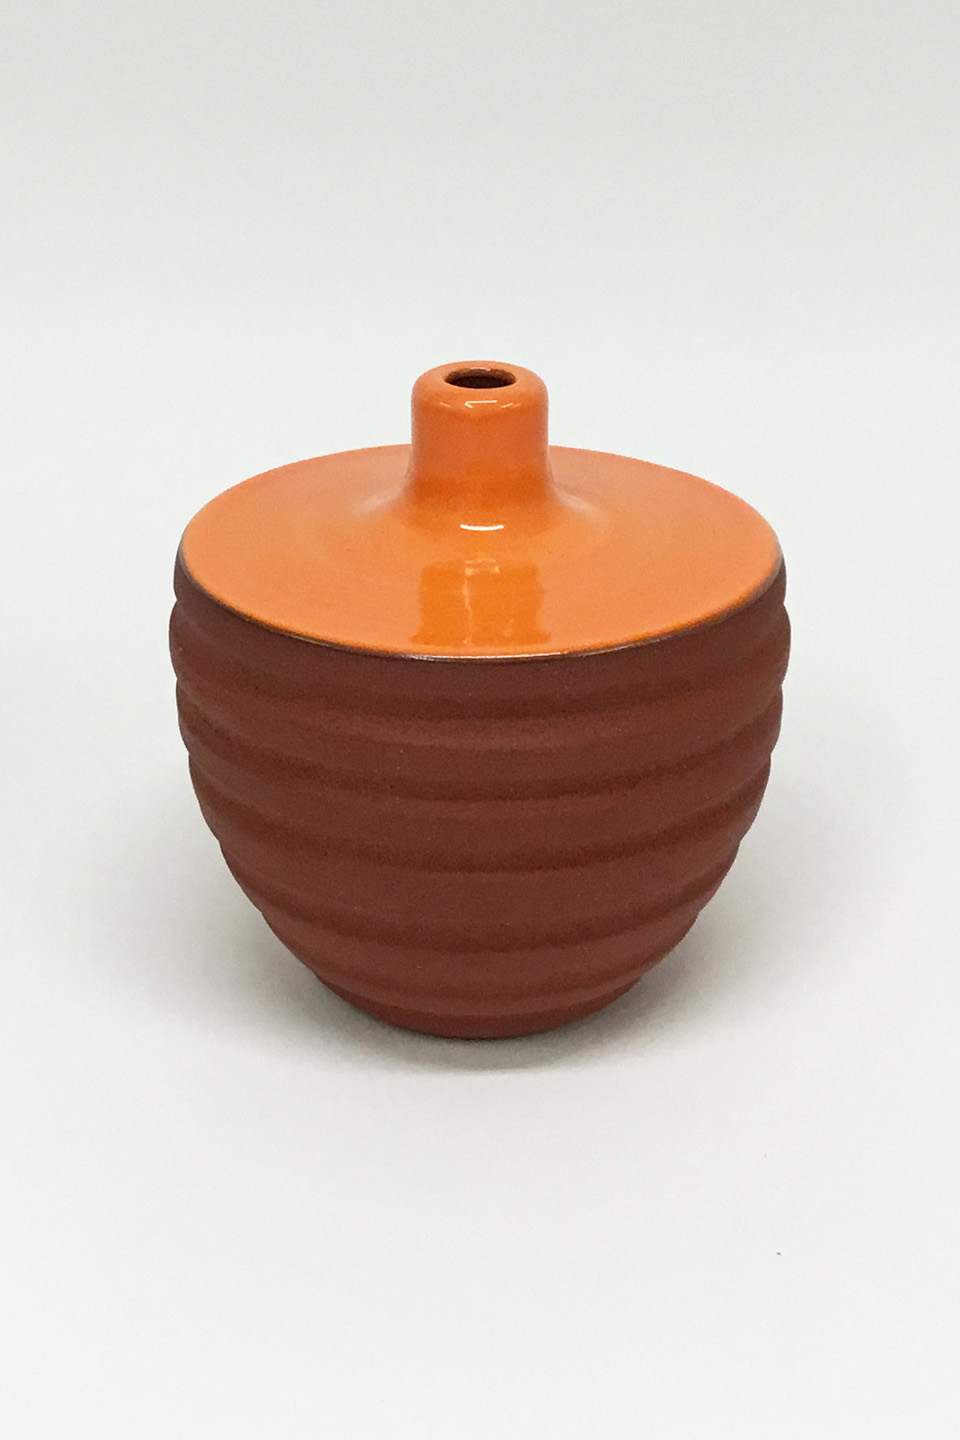 Ceramic by Zuzana Licko No. 904 - 1